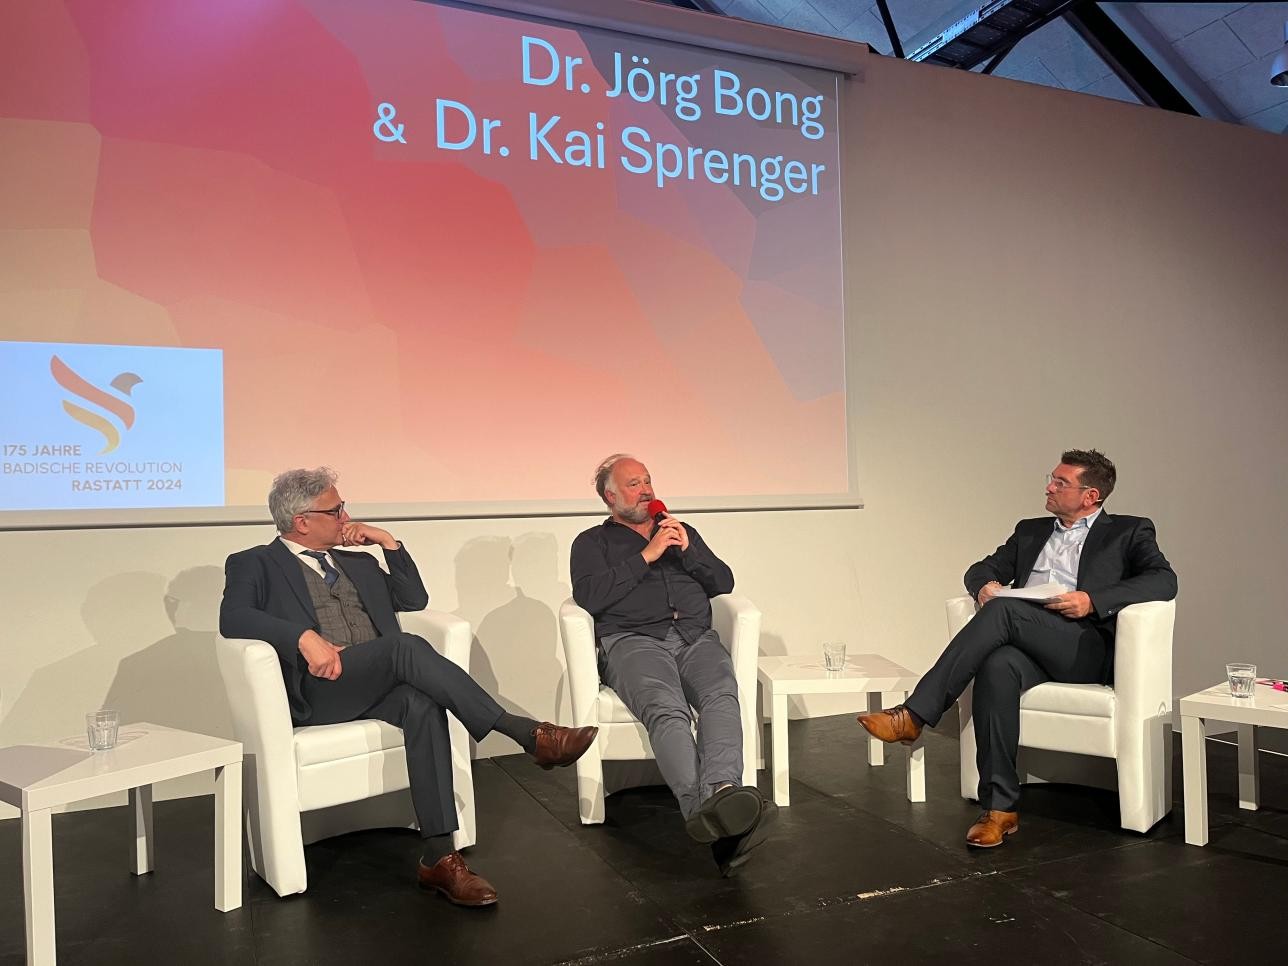 Dr Kai Sprenger, Dr Jörg Bong et le modérateur Jochen Graf sur la scène du manège lors d'une table ronde